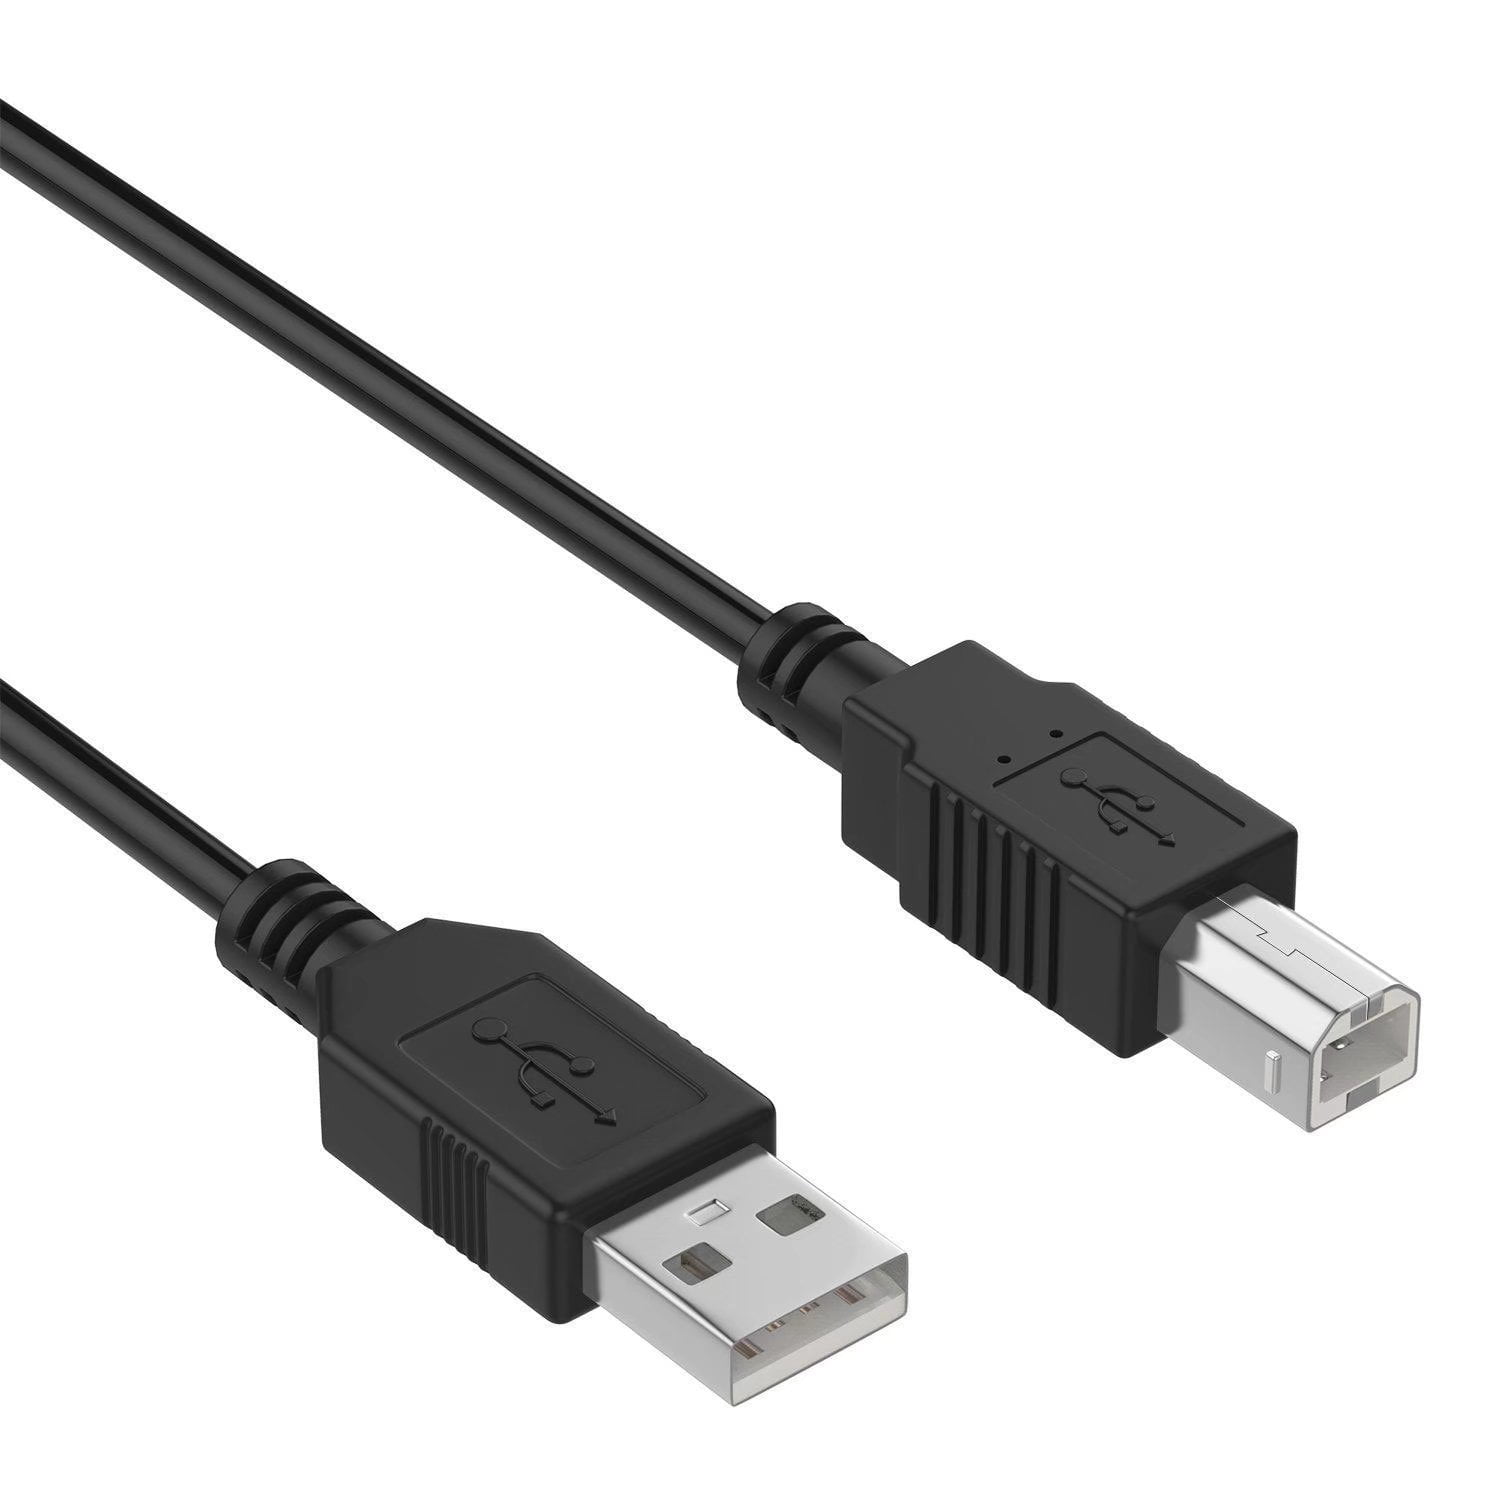 6ft USB 2.0 Cable Cord for Akai MPD16 MPD18 MPD24 MPD25 MPD26 MPD32 Professional 